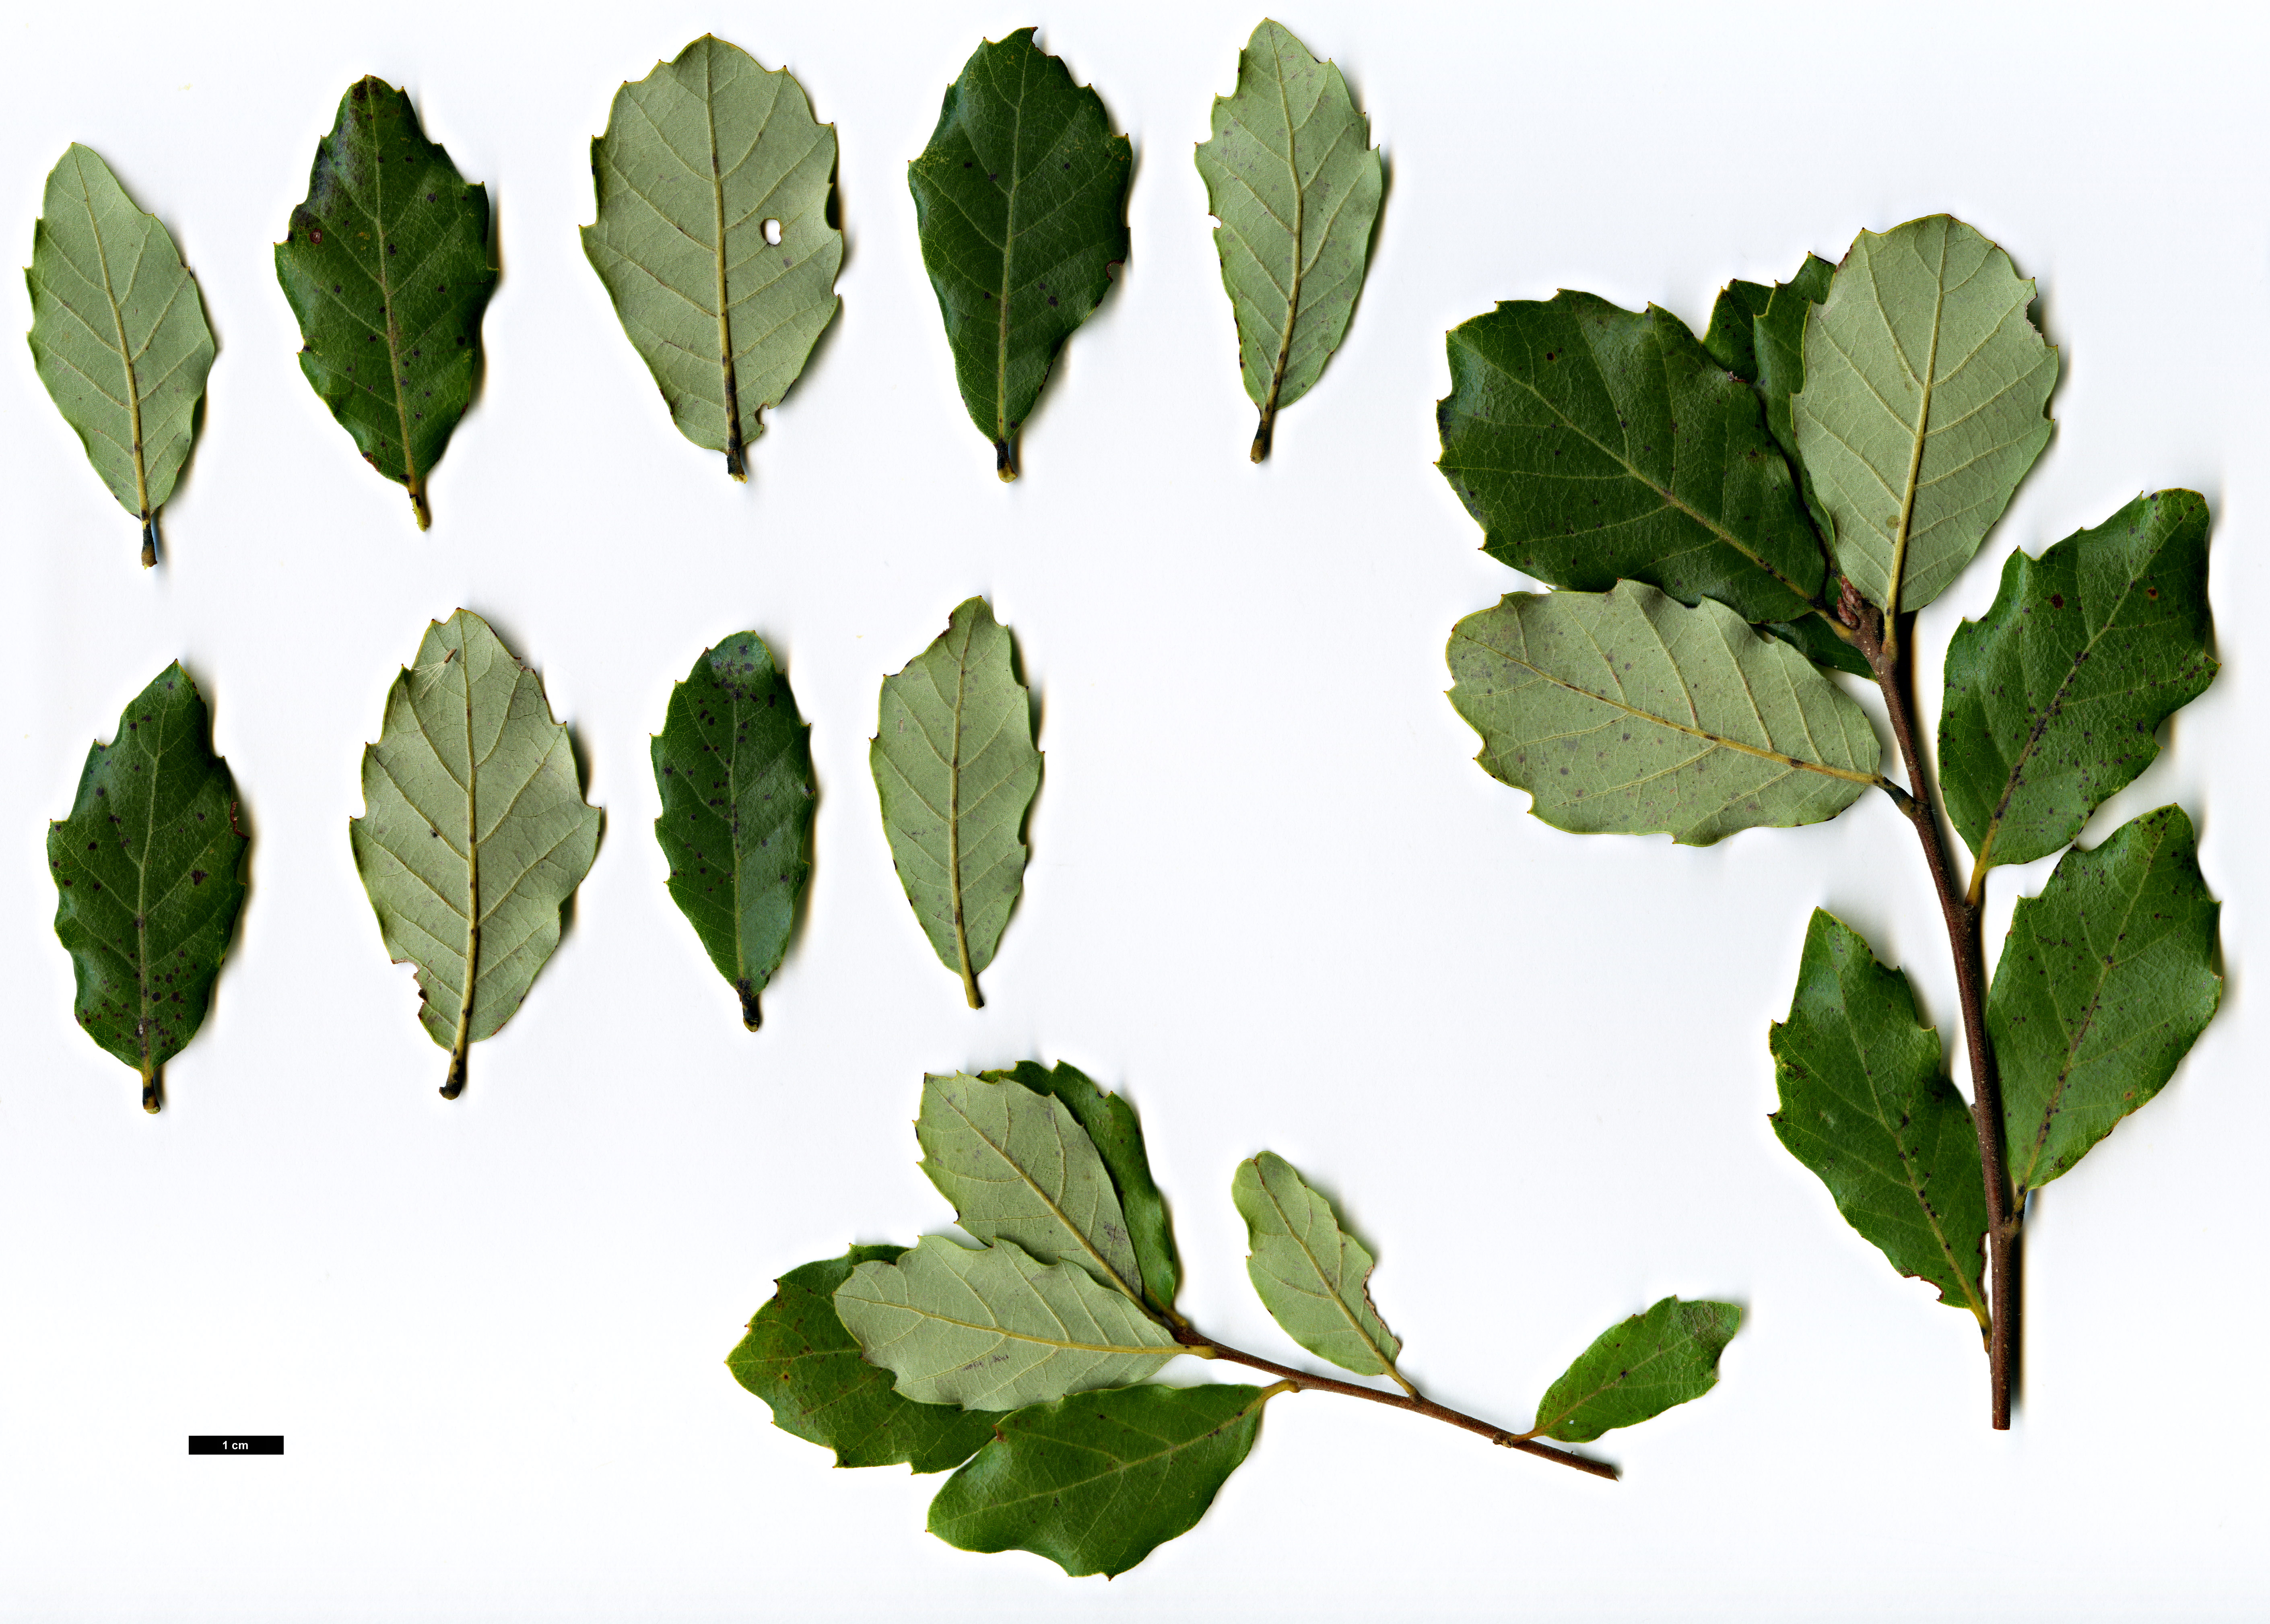 High resolution image: Family: Fagaceae - Genus: Quercus - Taxon: ×celtica (Q.lusitanica × Q.suber)